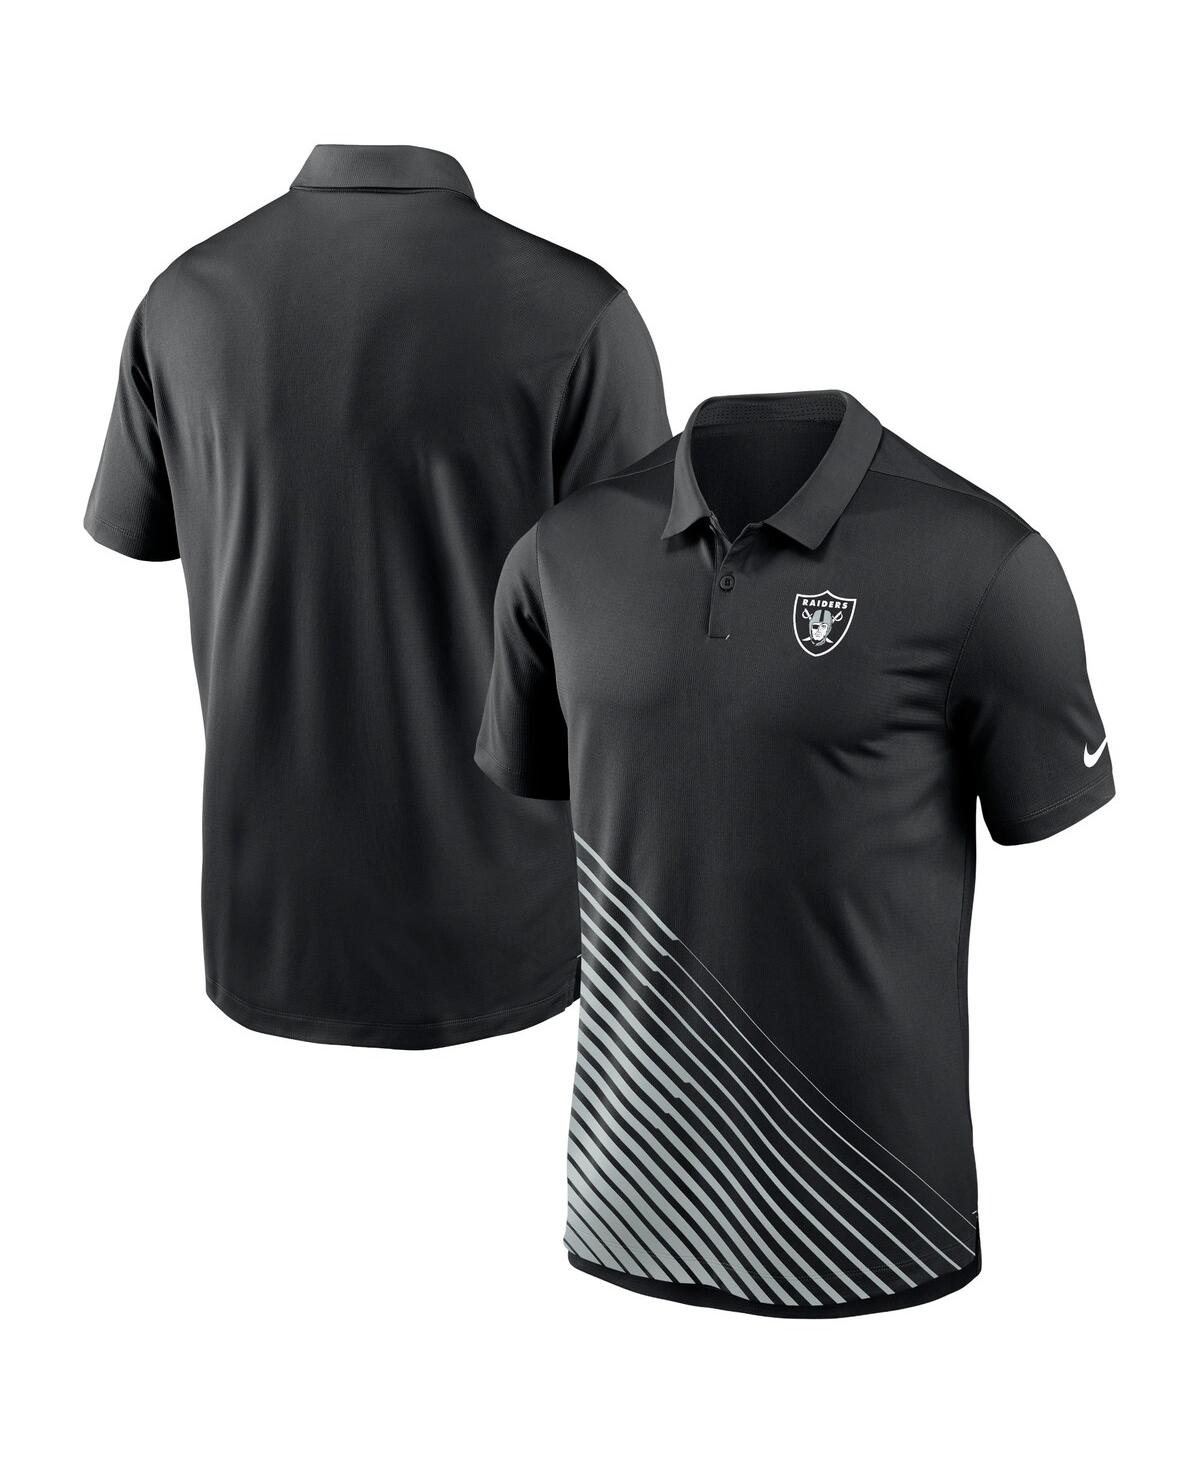 Men's Nike Black Las Vegas Raiders Vapor Performance Polo Shirt - Black